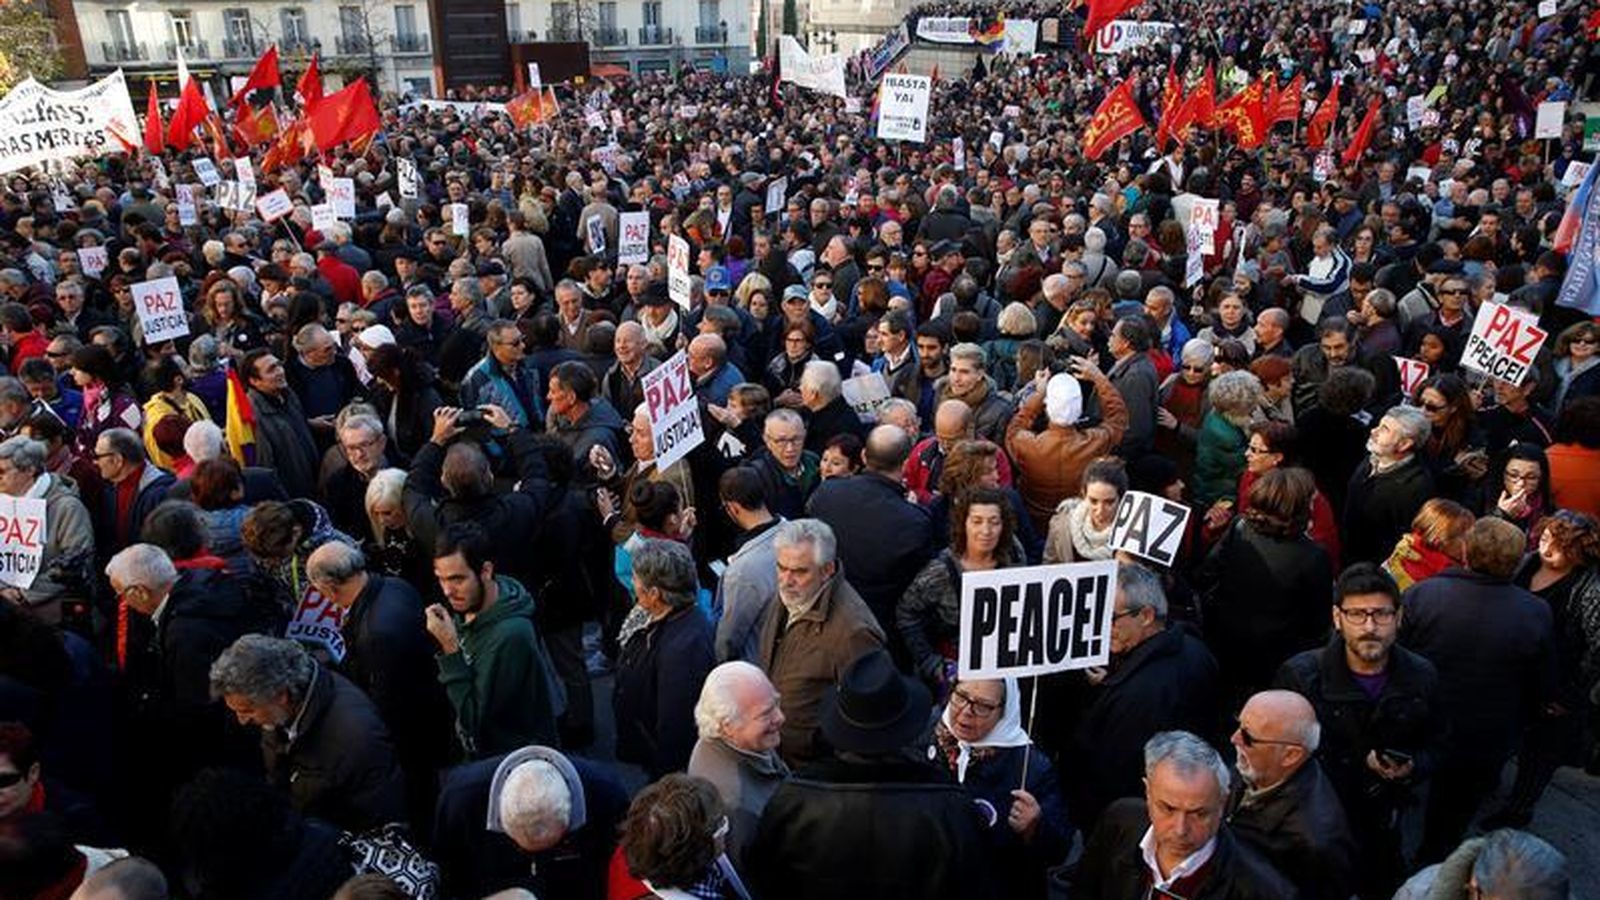 Foto: Imagen de la manifestación contra los bombardeos en Siria en noviembre. (Efe)